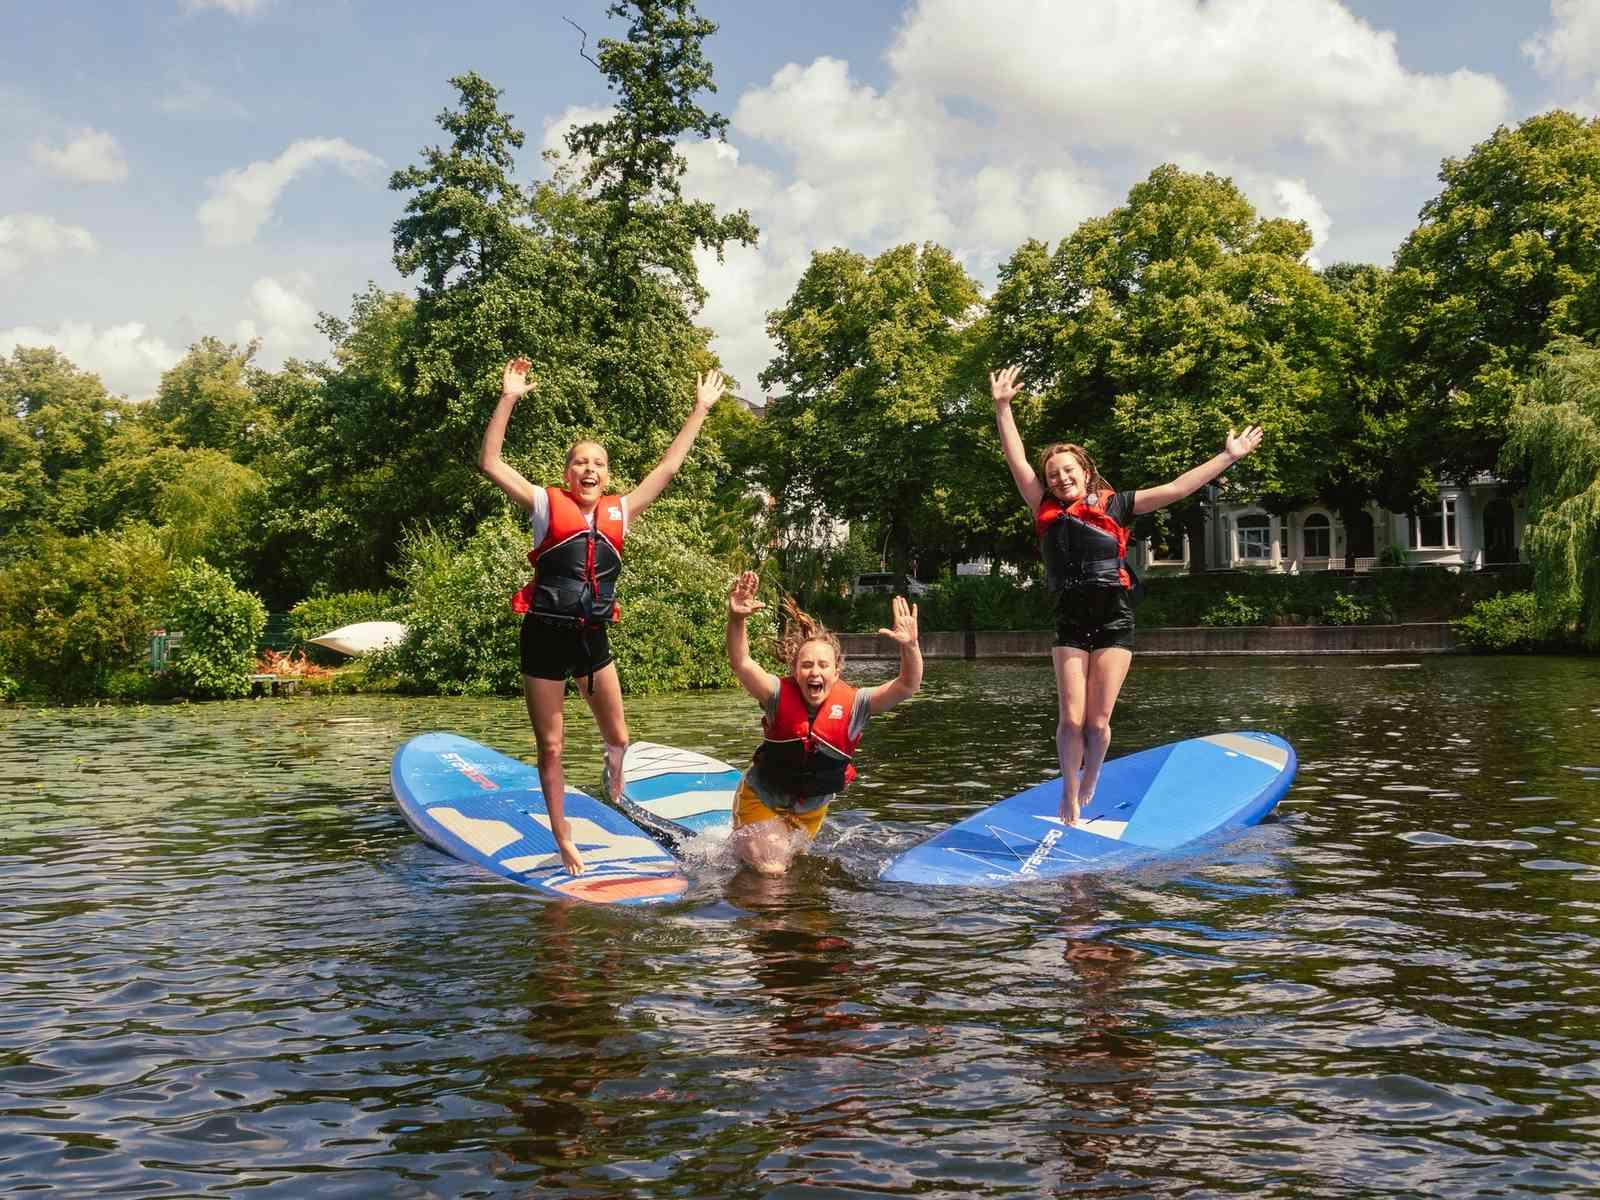 Drei junge Frauen springen von SUPs ins Wasser und lachen in die Kamera